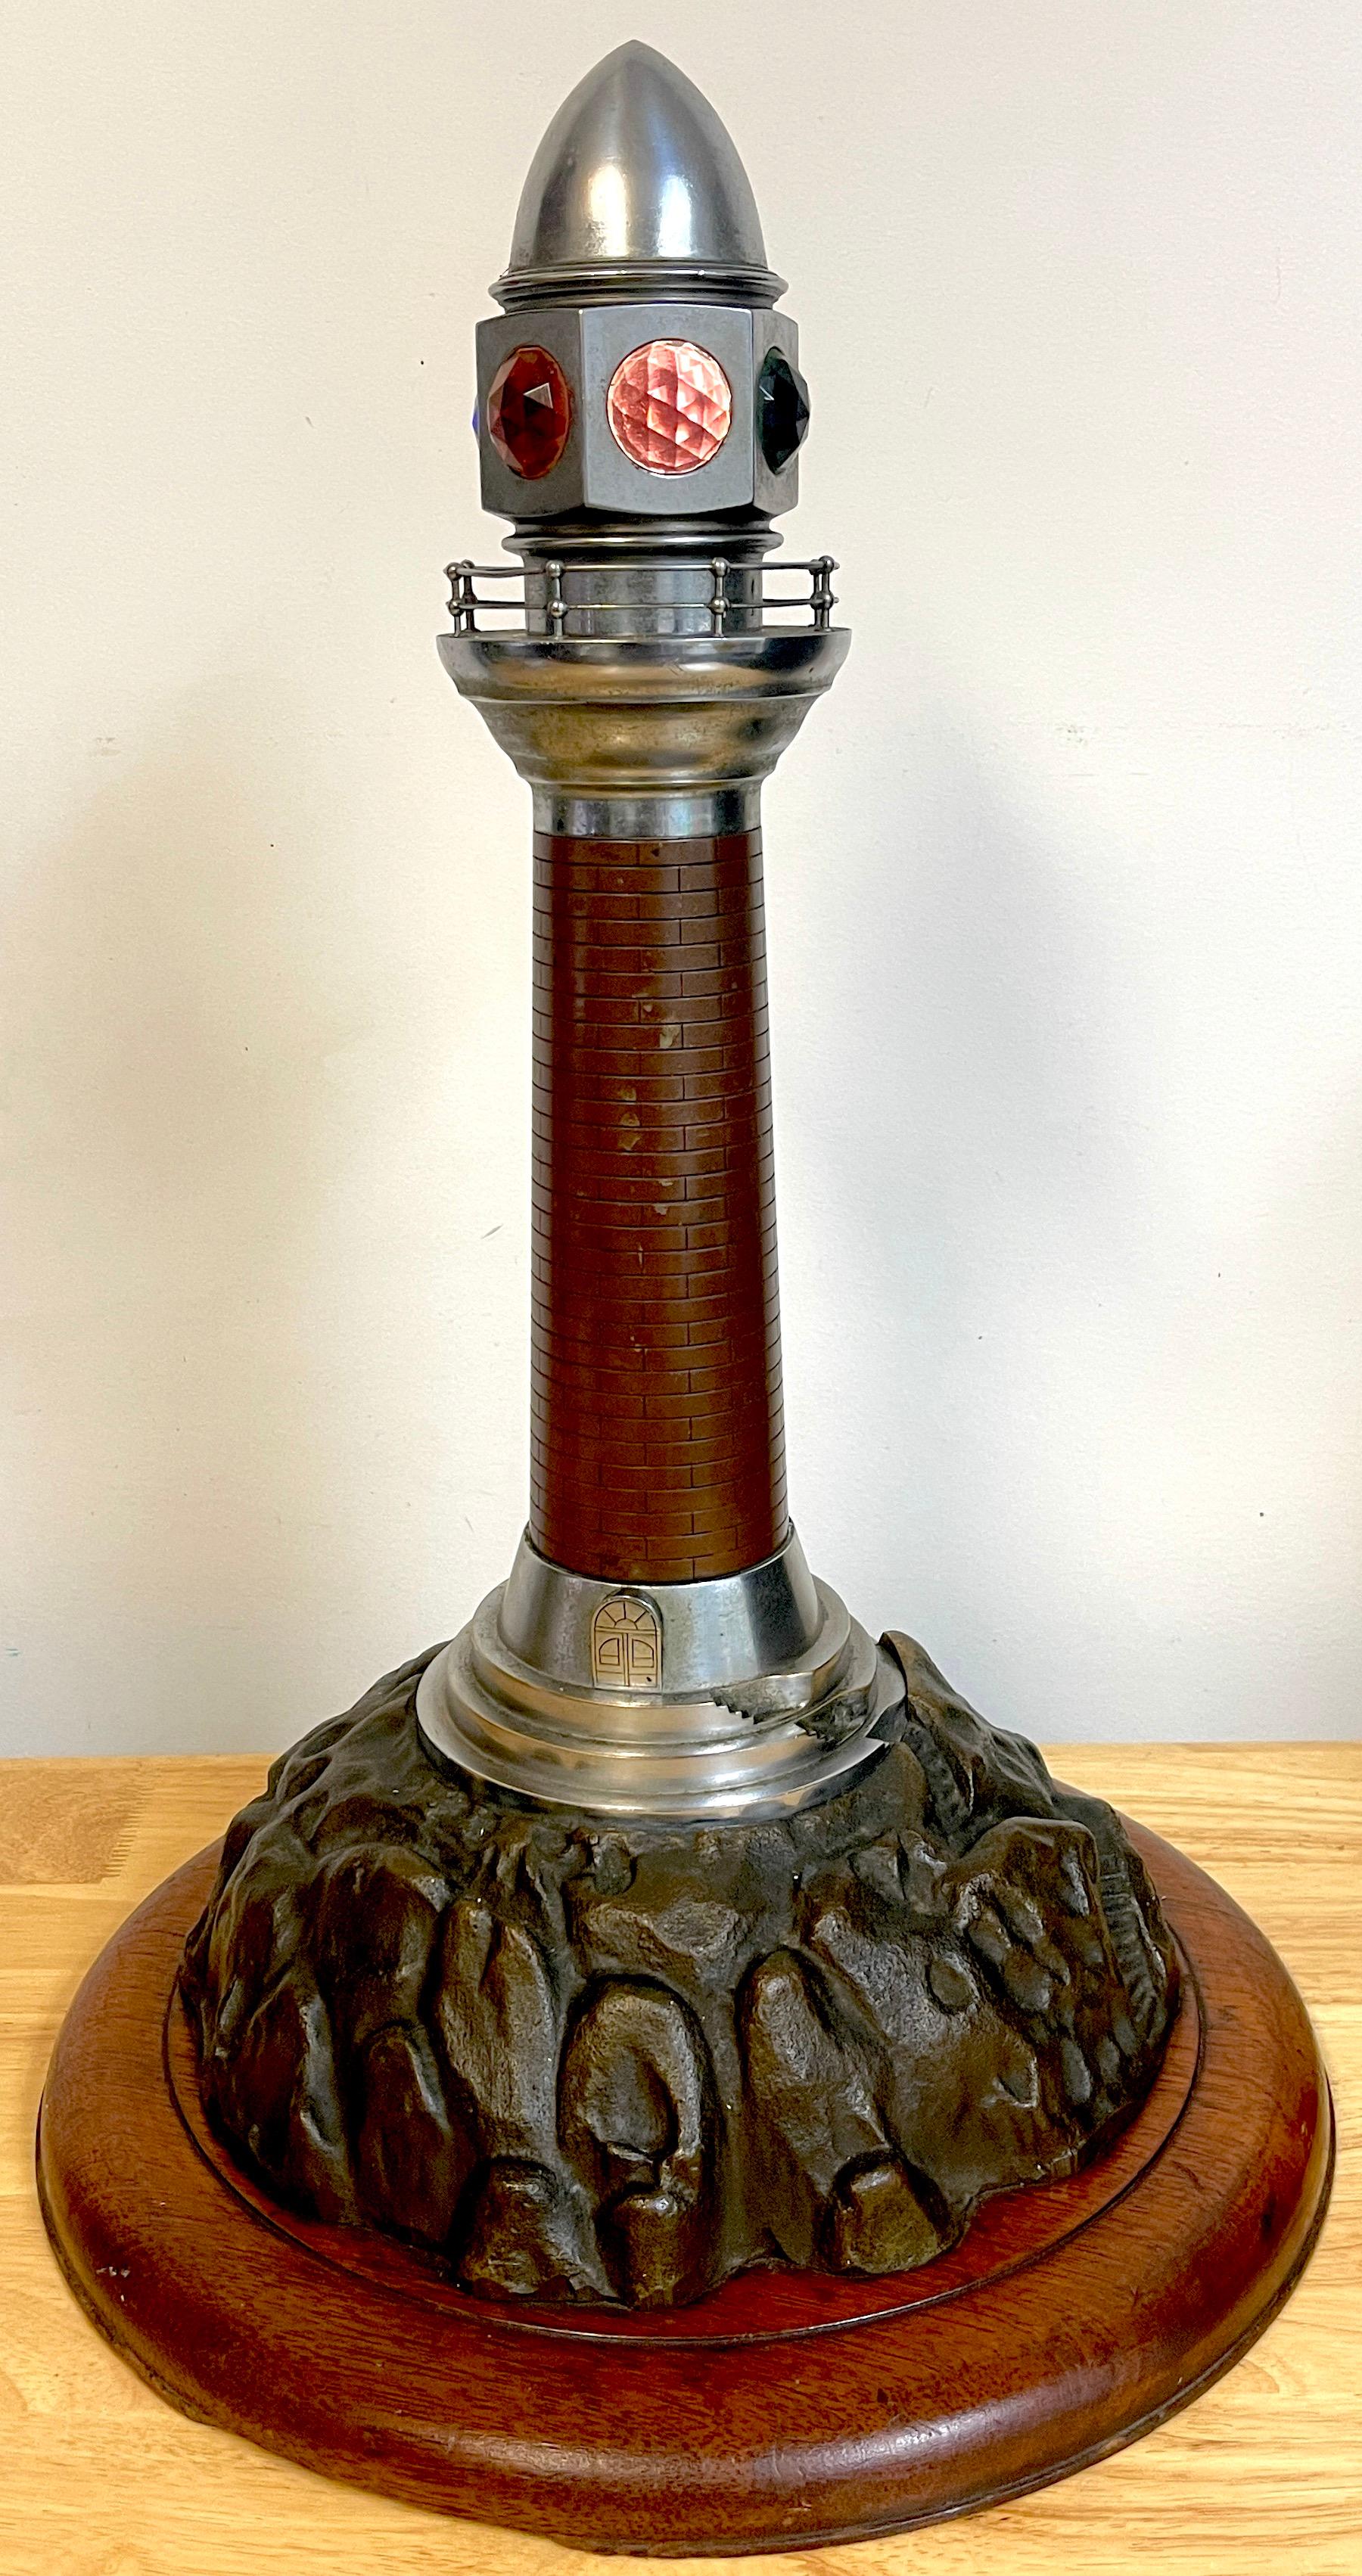 Französisch Art Deco Bronze, Stahl, Kristall und Holz Modell eines Leuchtturms Lampe, eine erhebliche, aufwendig detaillierte Modell eines Leuchtturms, mit eingefügten farbigen geschliffenen Kristall Schirme, auf einem 14 